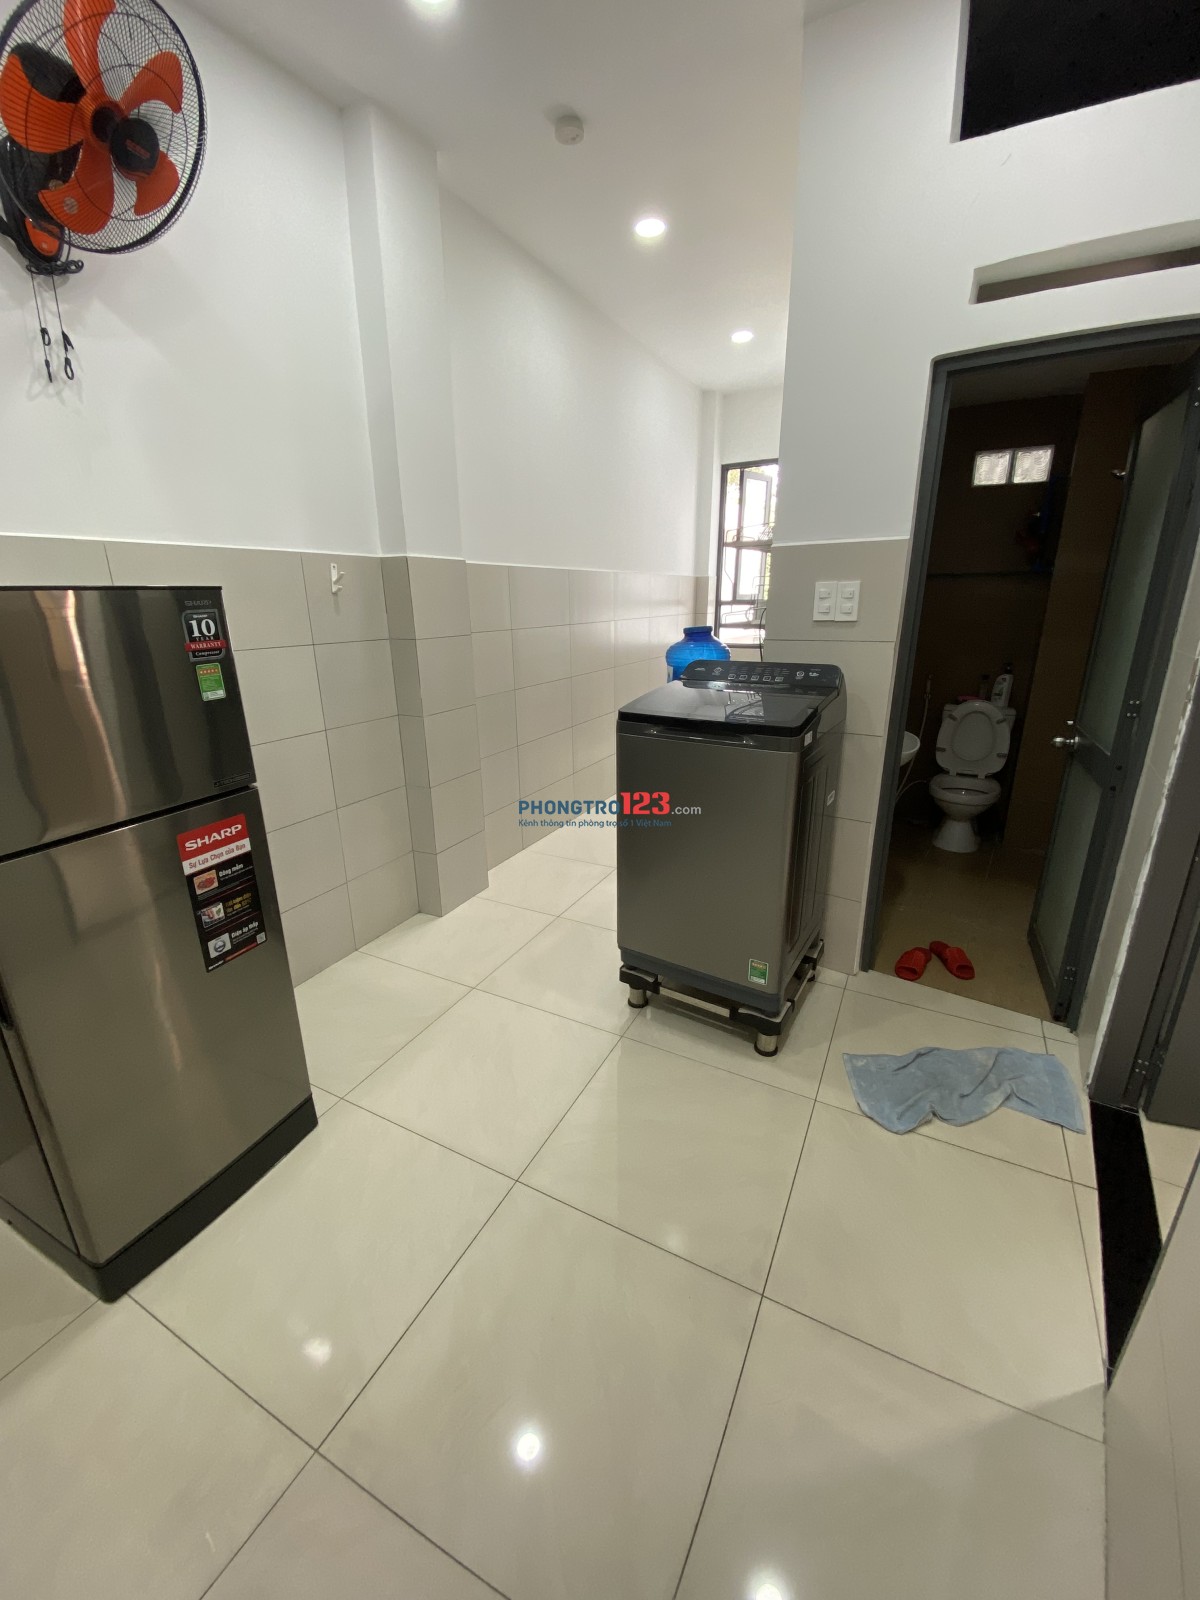 Căn cho thuê, có thang máy, máy lạnh, tủ lạnh, máy giặt, toilet riêng, có hệ thống phòng cháy tự động